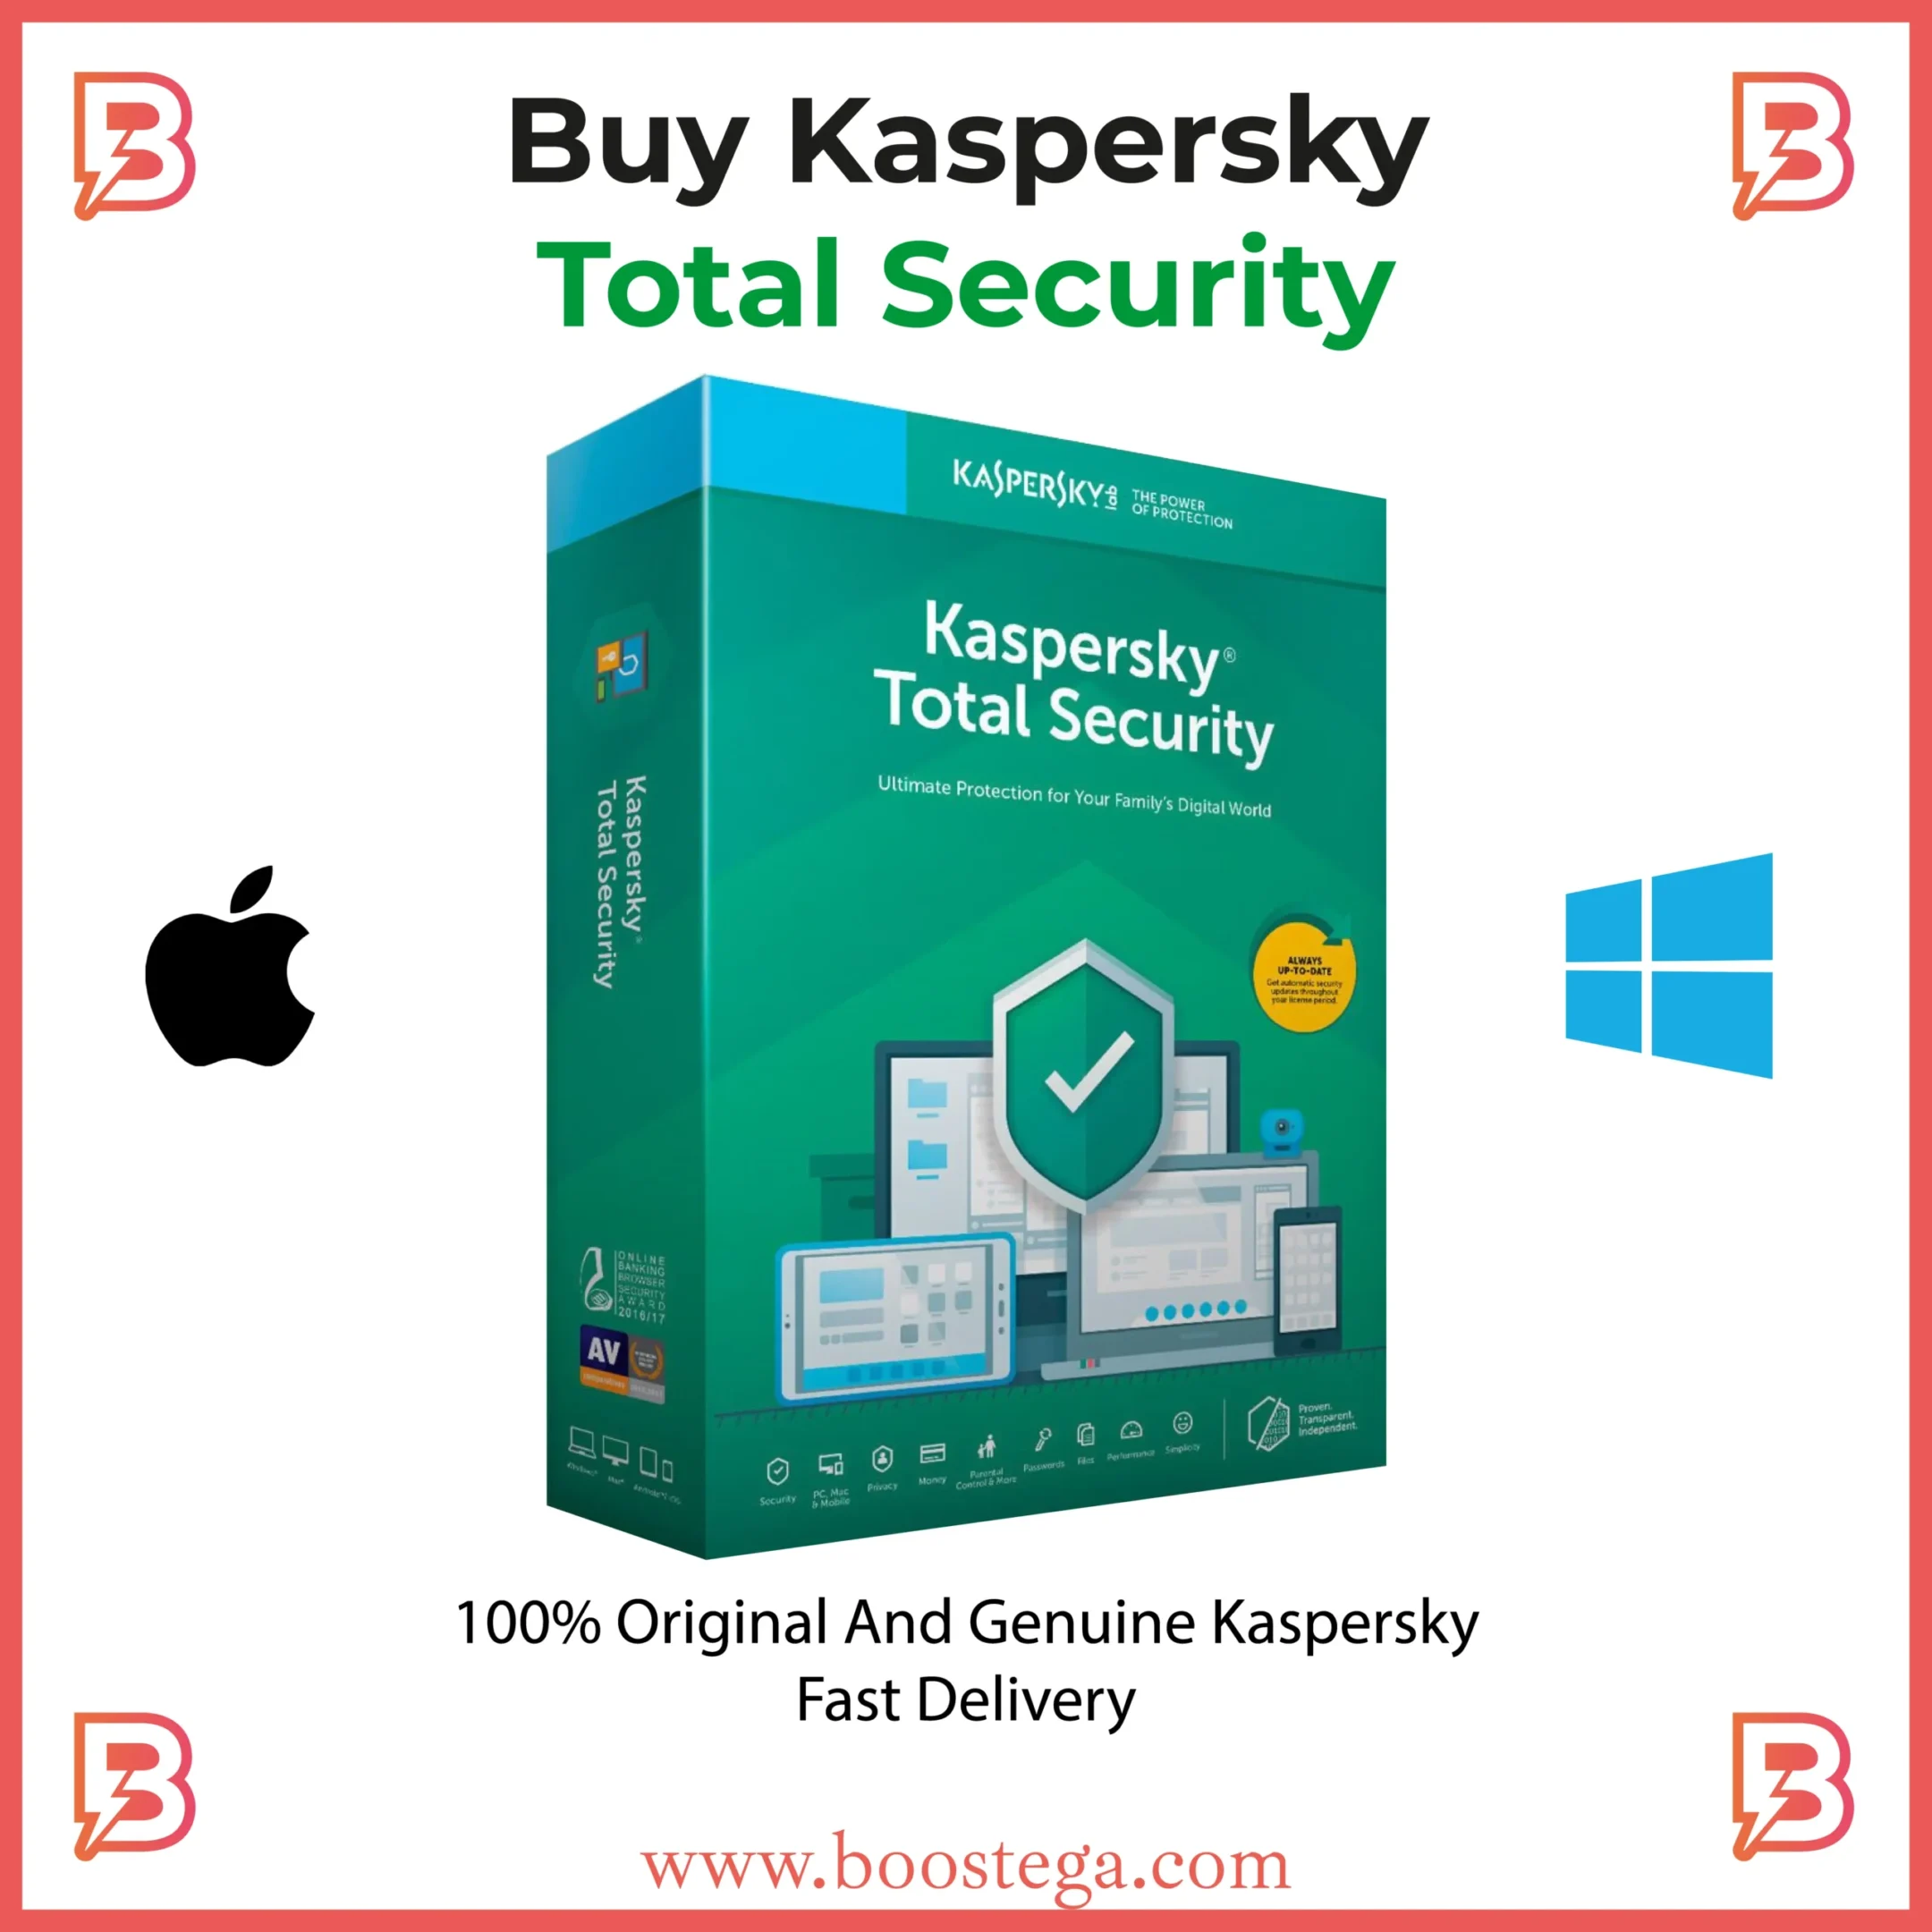 Buy kaspersky total securityby boostega